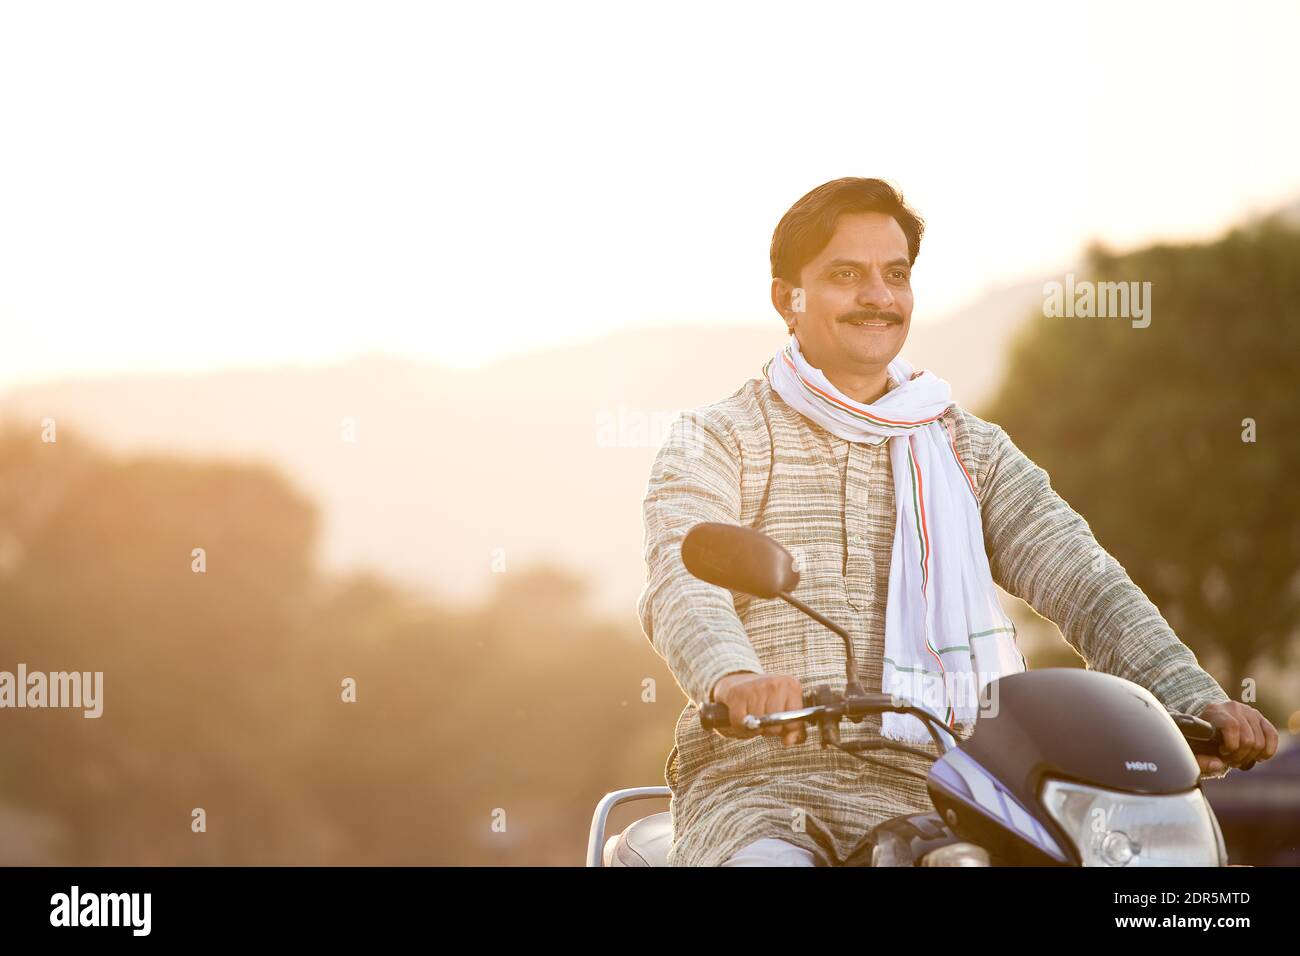 Feliz hombre rural indio que monta en motocicleta en el pueblo Foto de stock